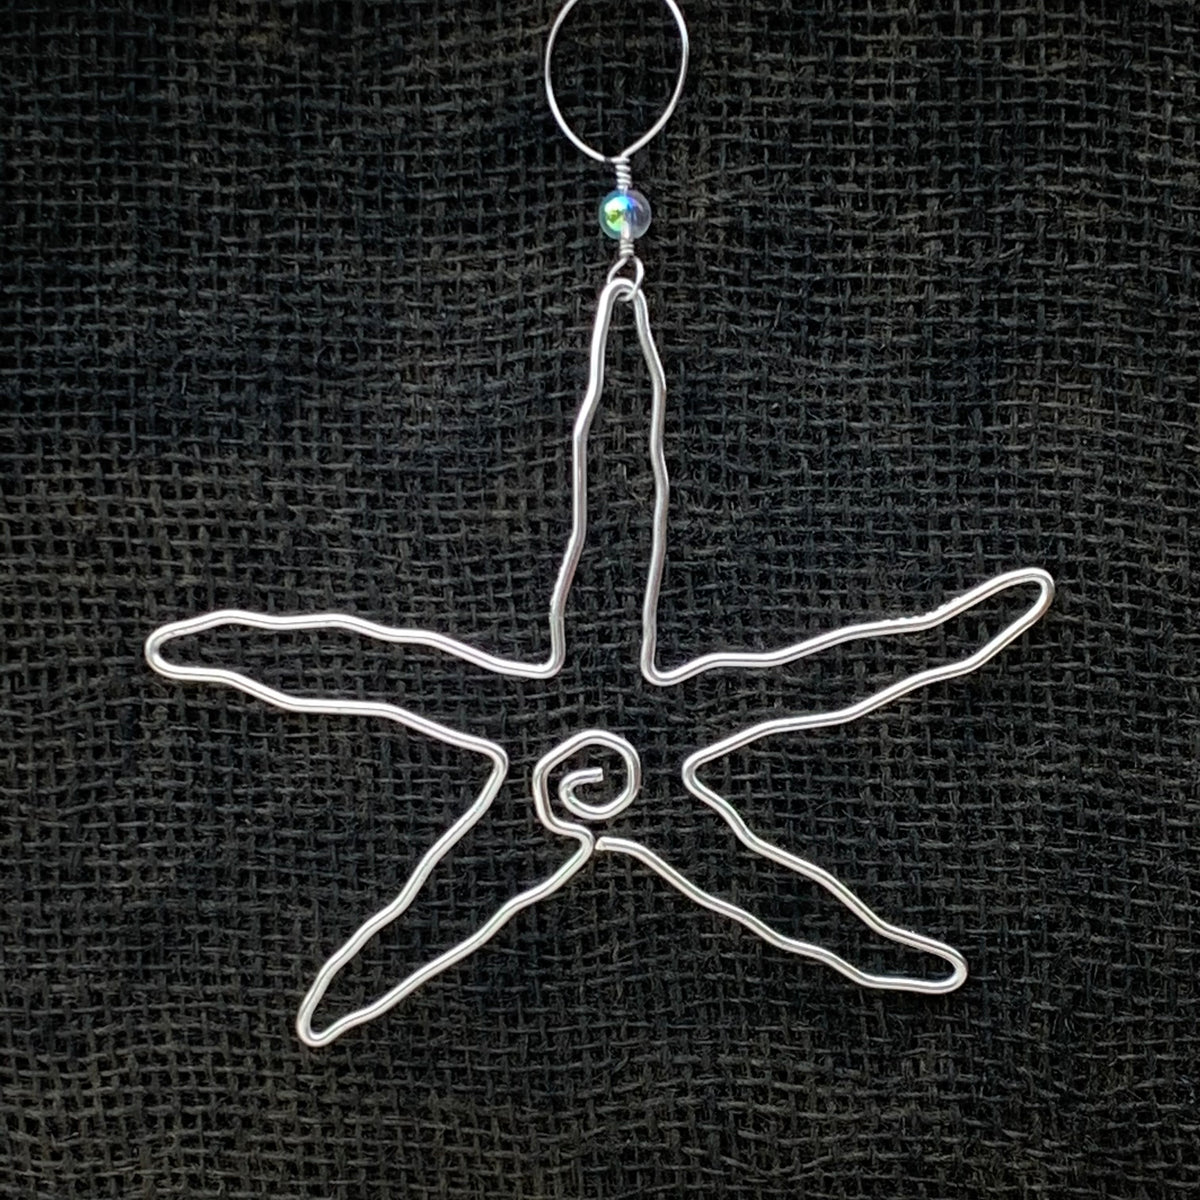 Hand Bent Wire Sea Star Ornament